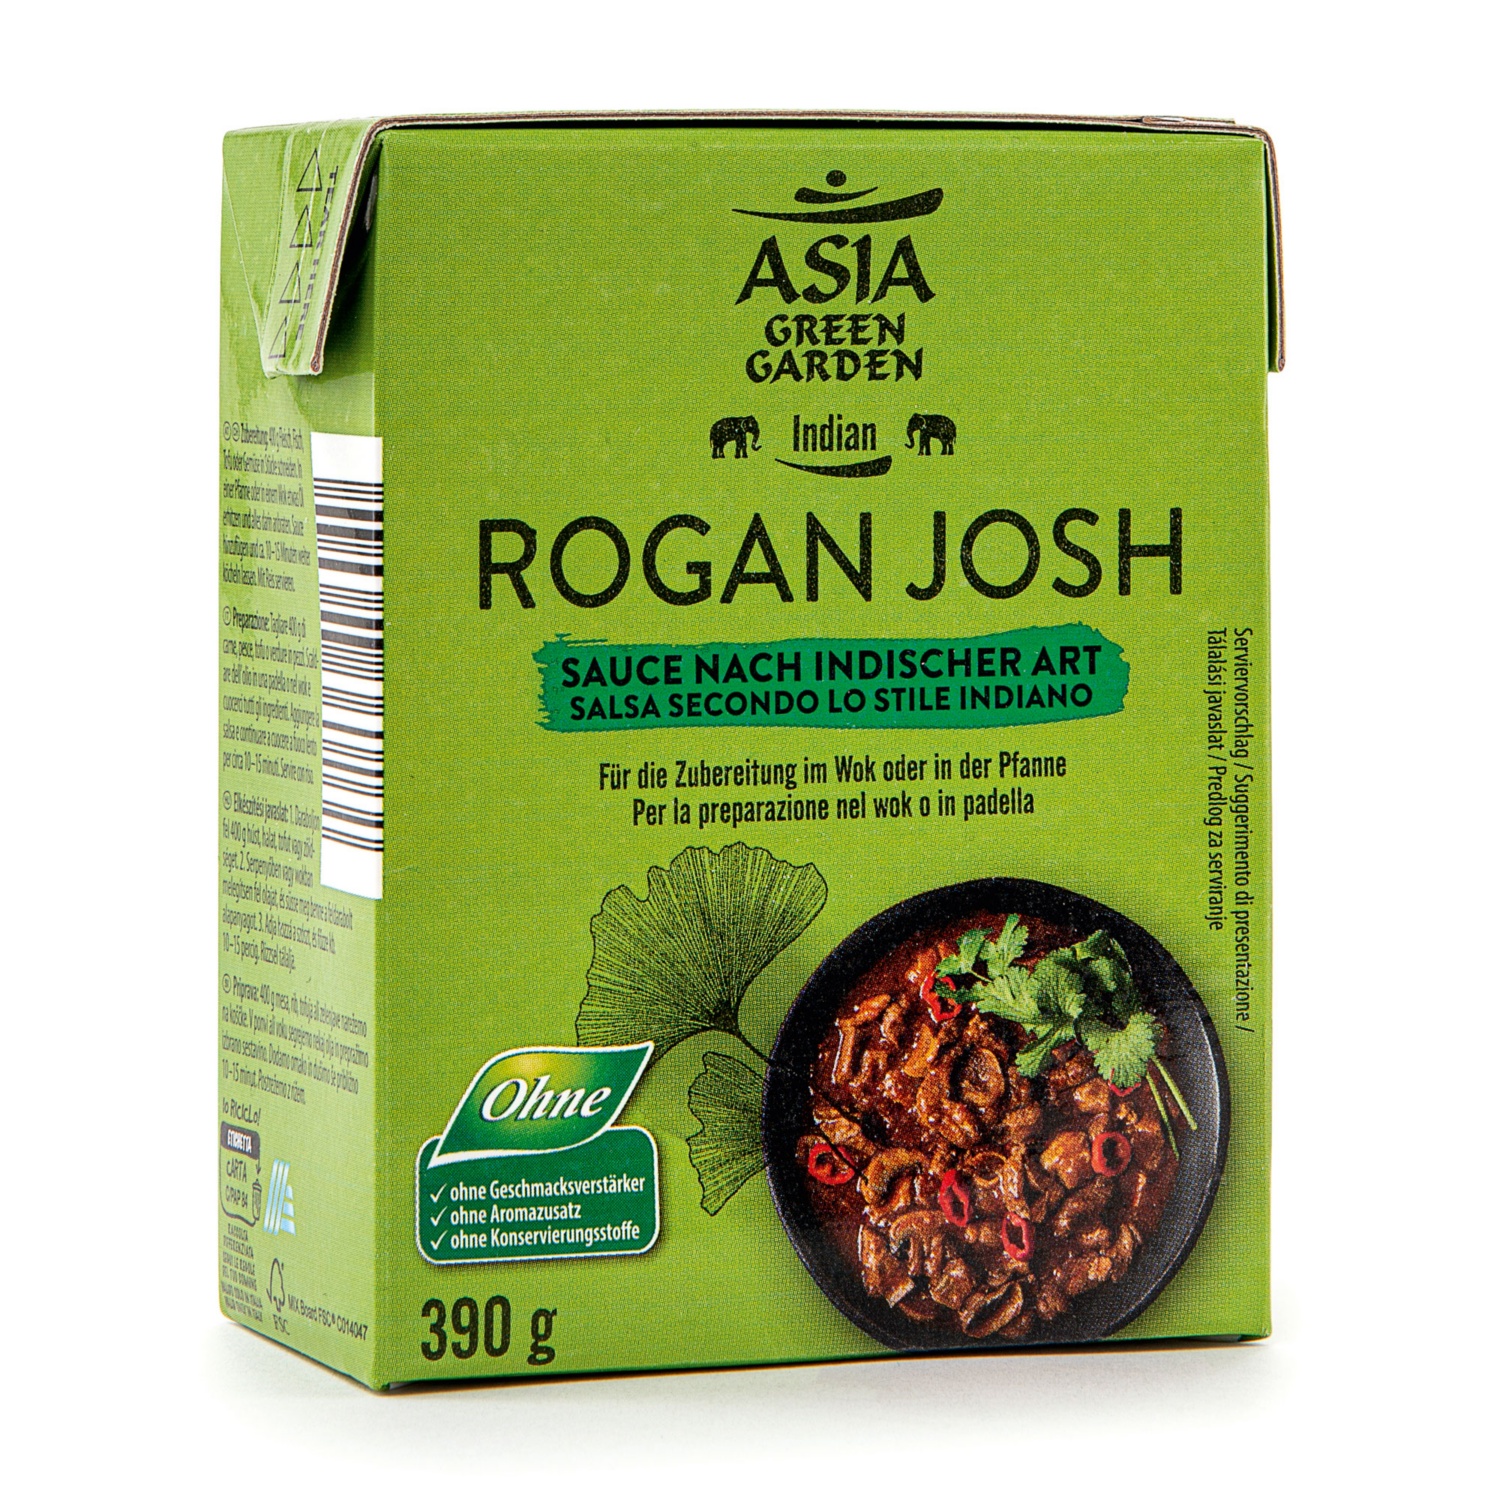 ASIA GREEN GARDEN Indische Saucen, Rogan Josh